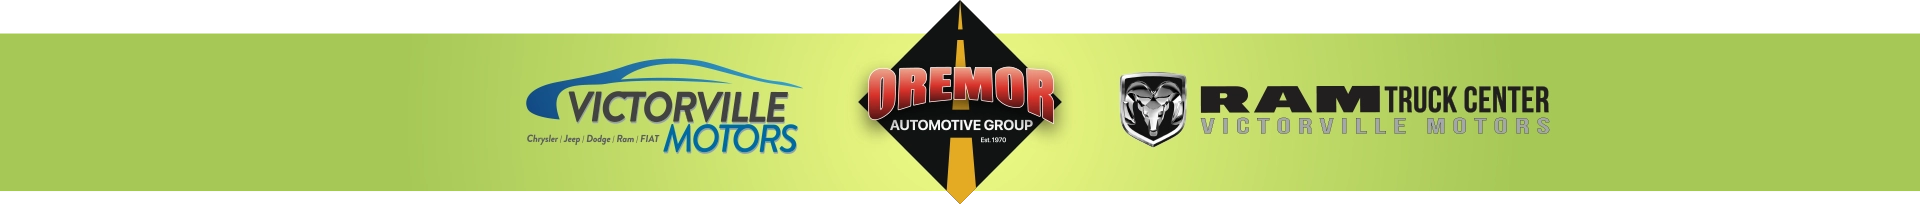 Oremor Auto Group